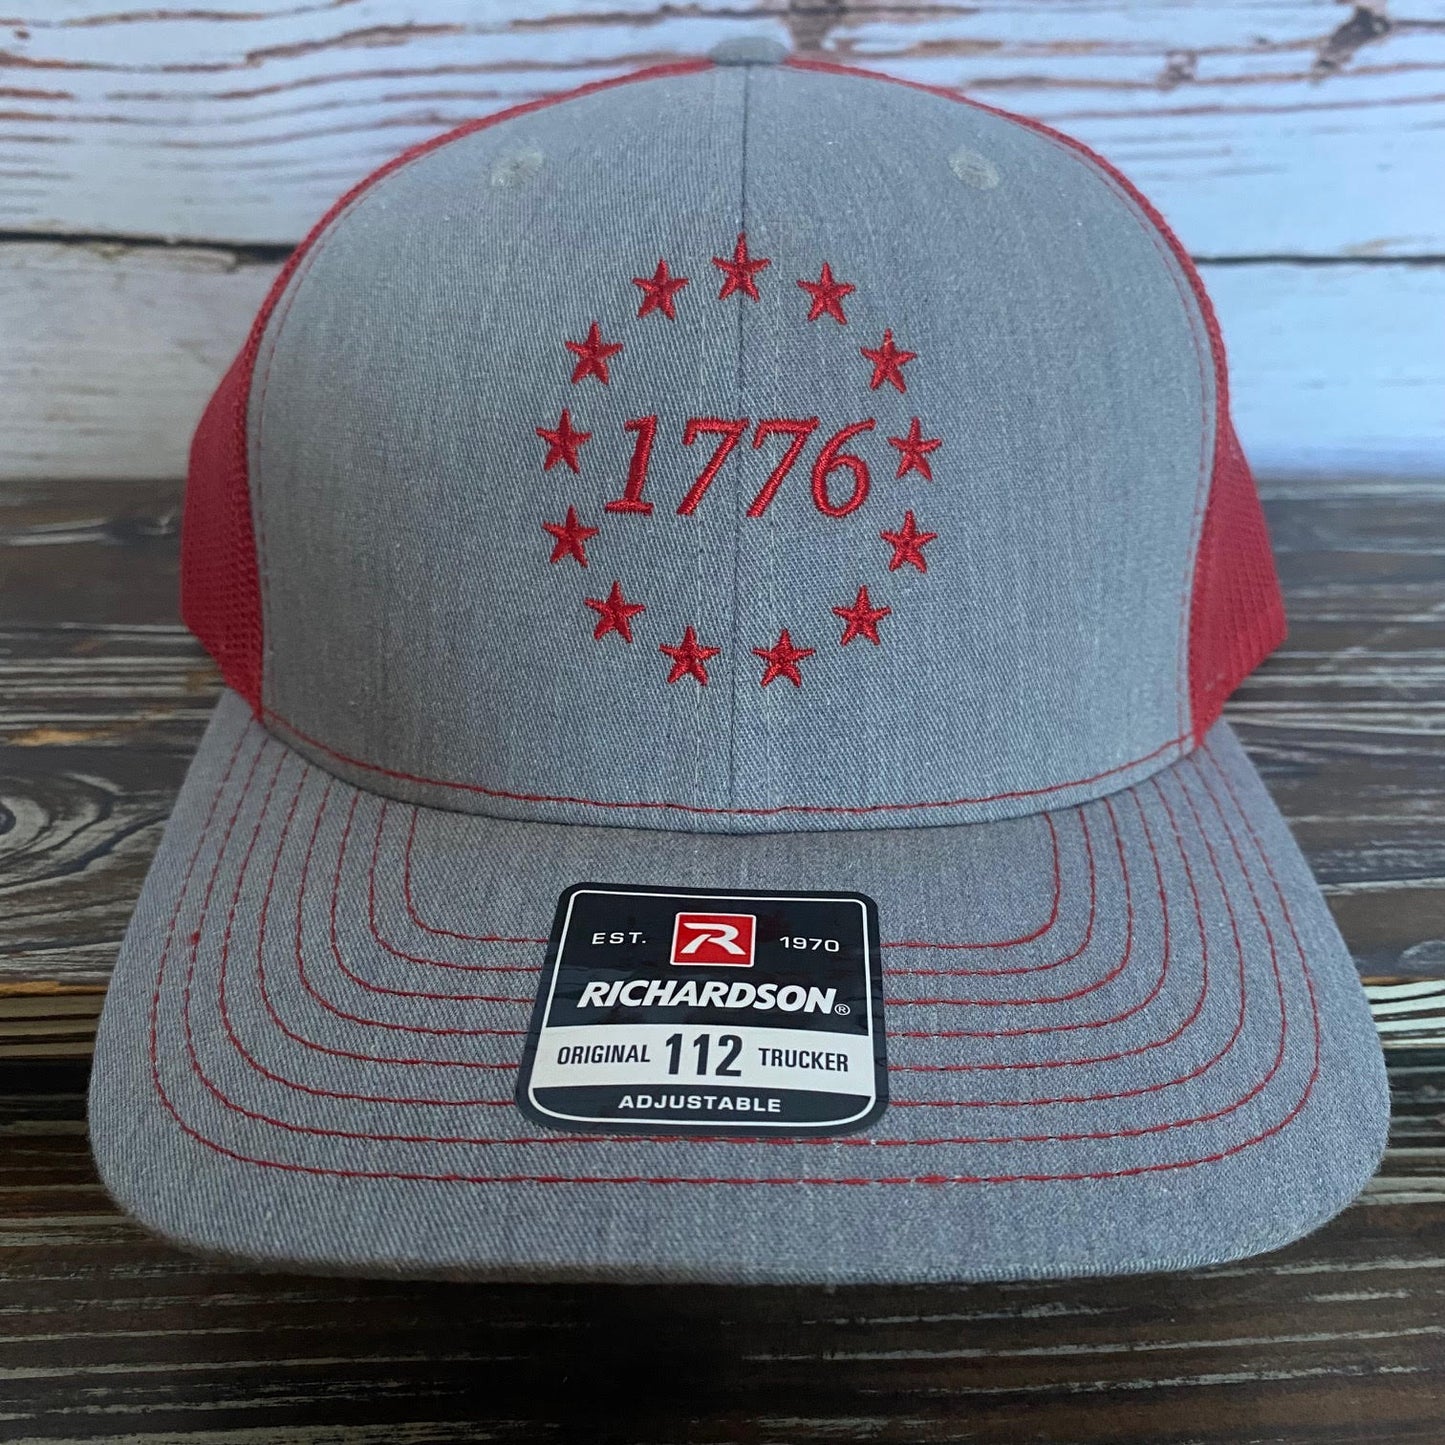 1776 Hat